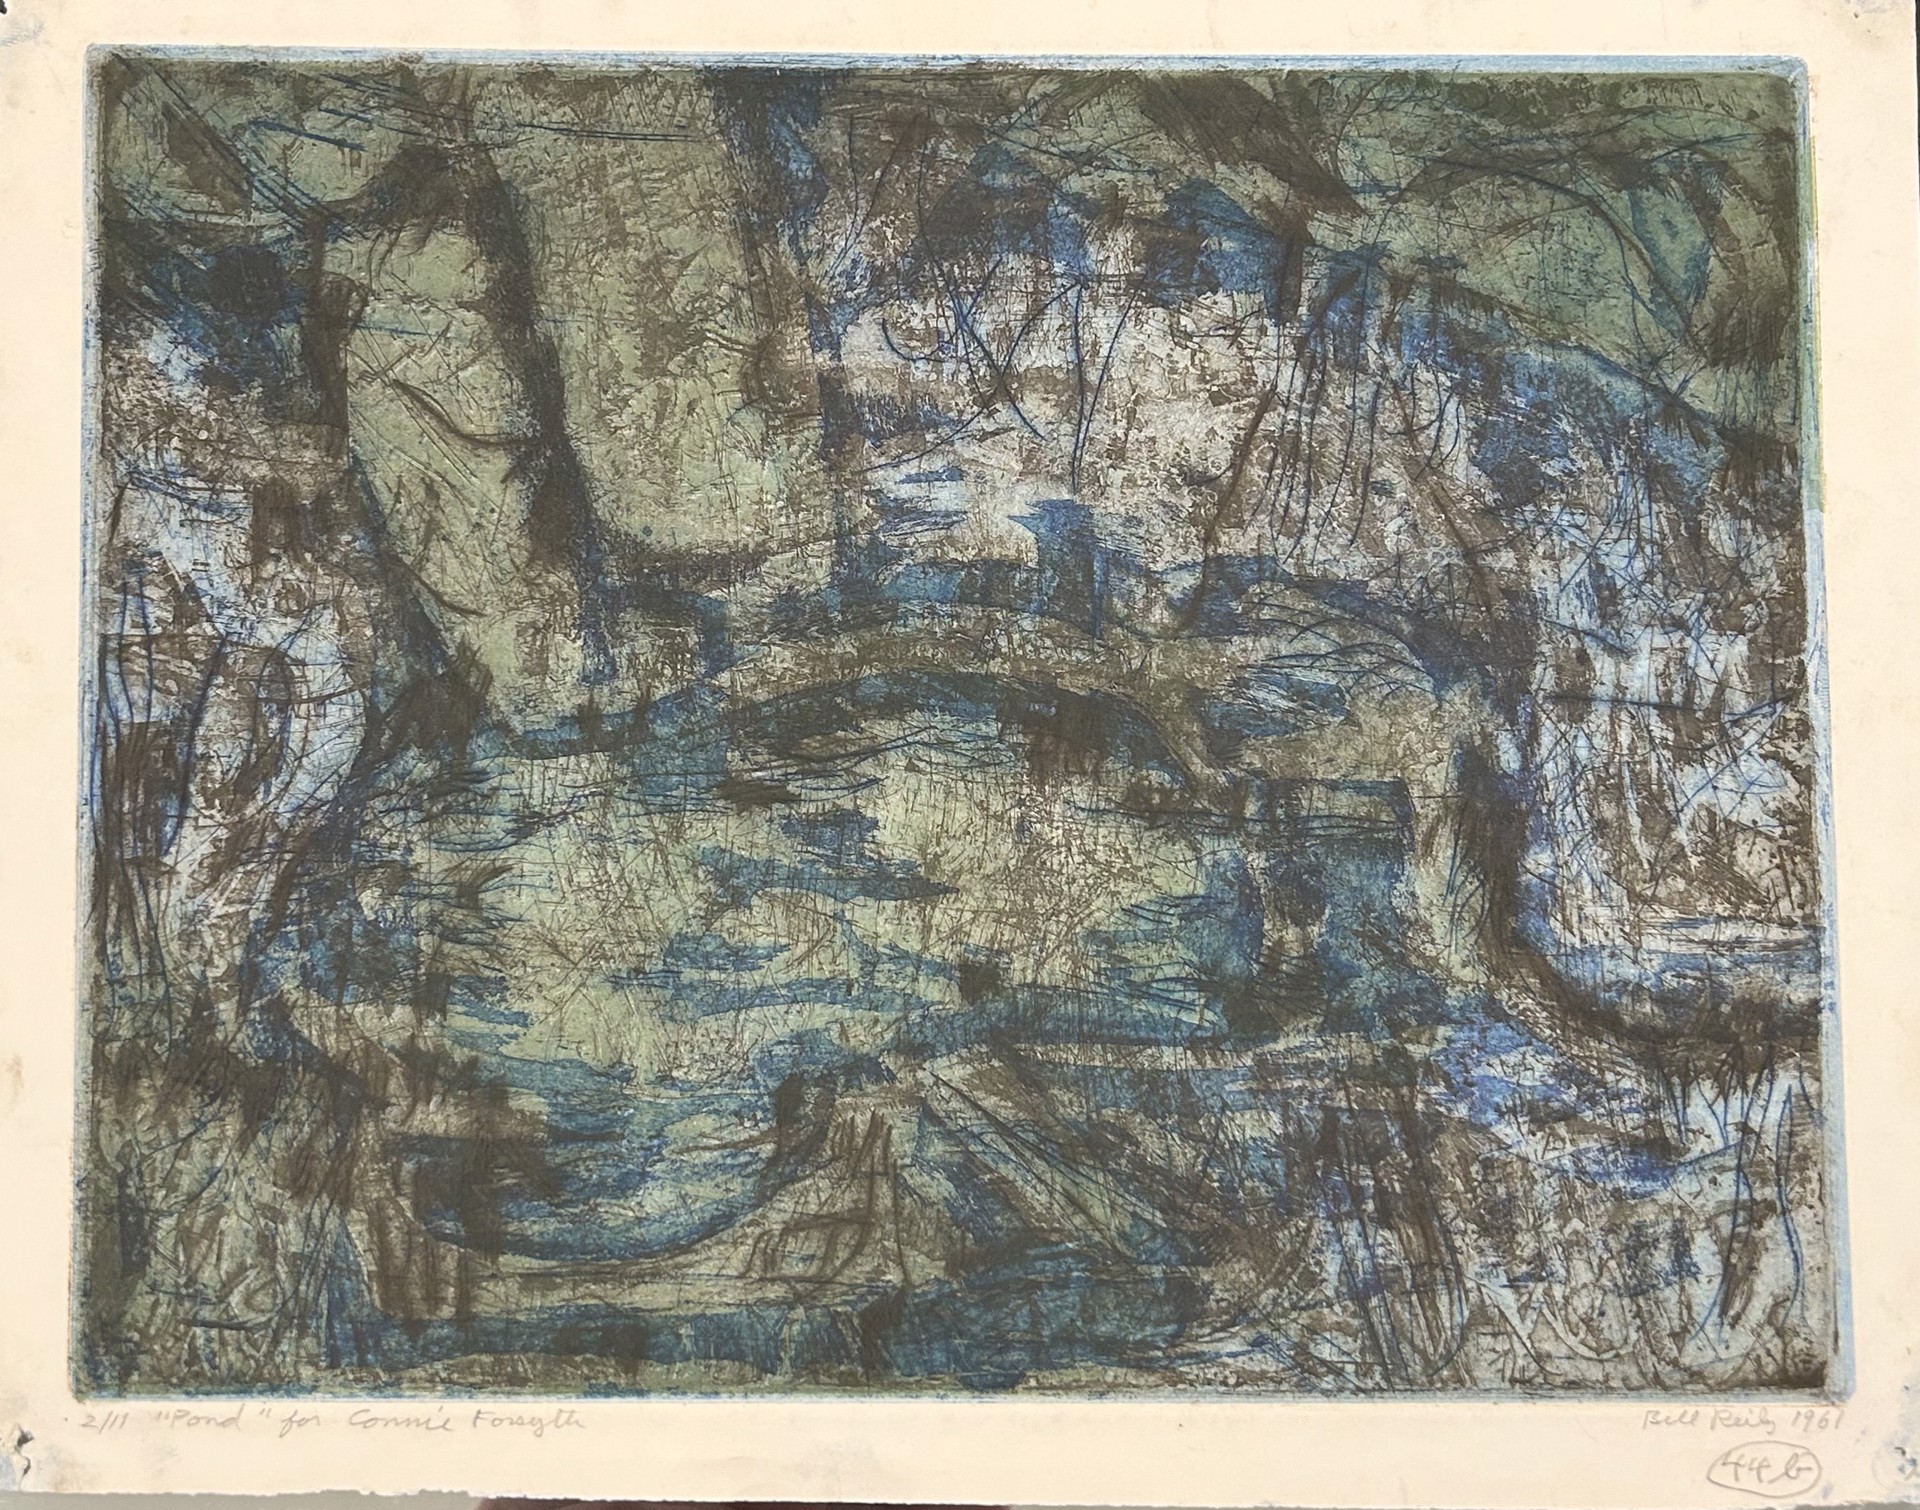 44b(i). Pond (for Connie Forsyth) by Bill Reily - Prints